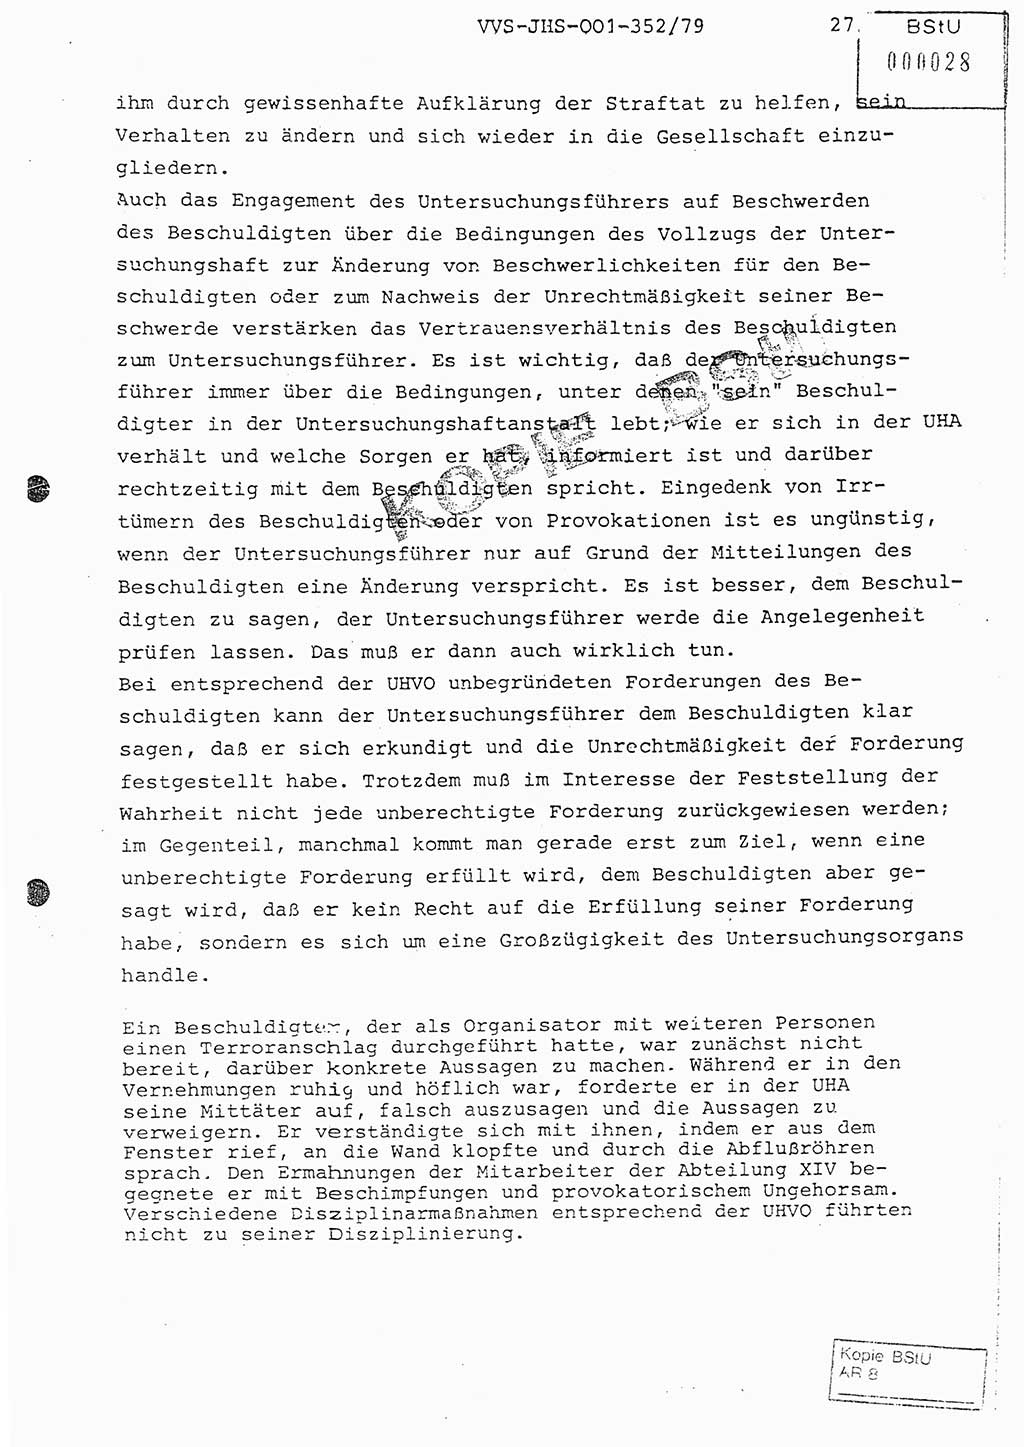 Diplomarbeit Hauptmann Peter Wittum (BV Bln. Abt. HA Ⅸ), Ministerium für Staatssicherheit (MfS) [Deutsche Demokratische Republik (DDR)], Juristische Hochschule (JHS), Vertrauliche Verschlußsache (VVS) o001-352/79, Potsdam 1979, Seite 27 (Dipl.-Arb. MfS DDR JHS VVS o001-352/79 1979, S. 27)